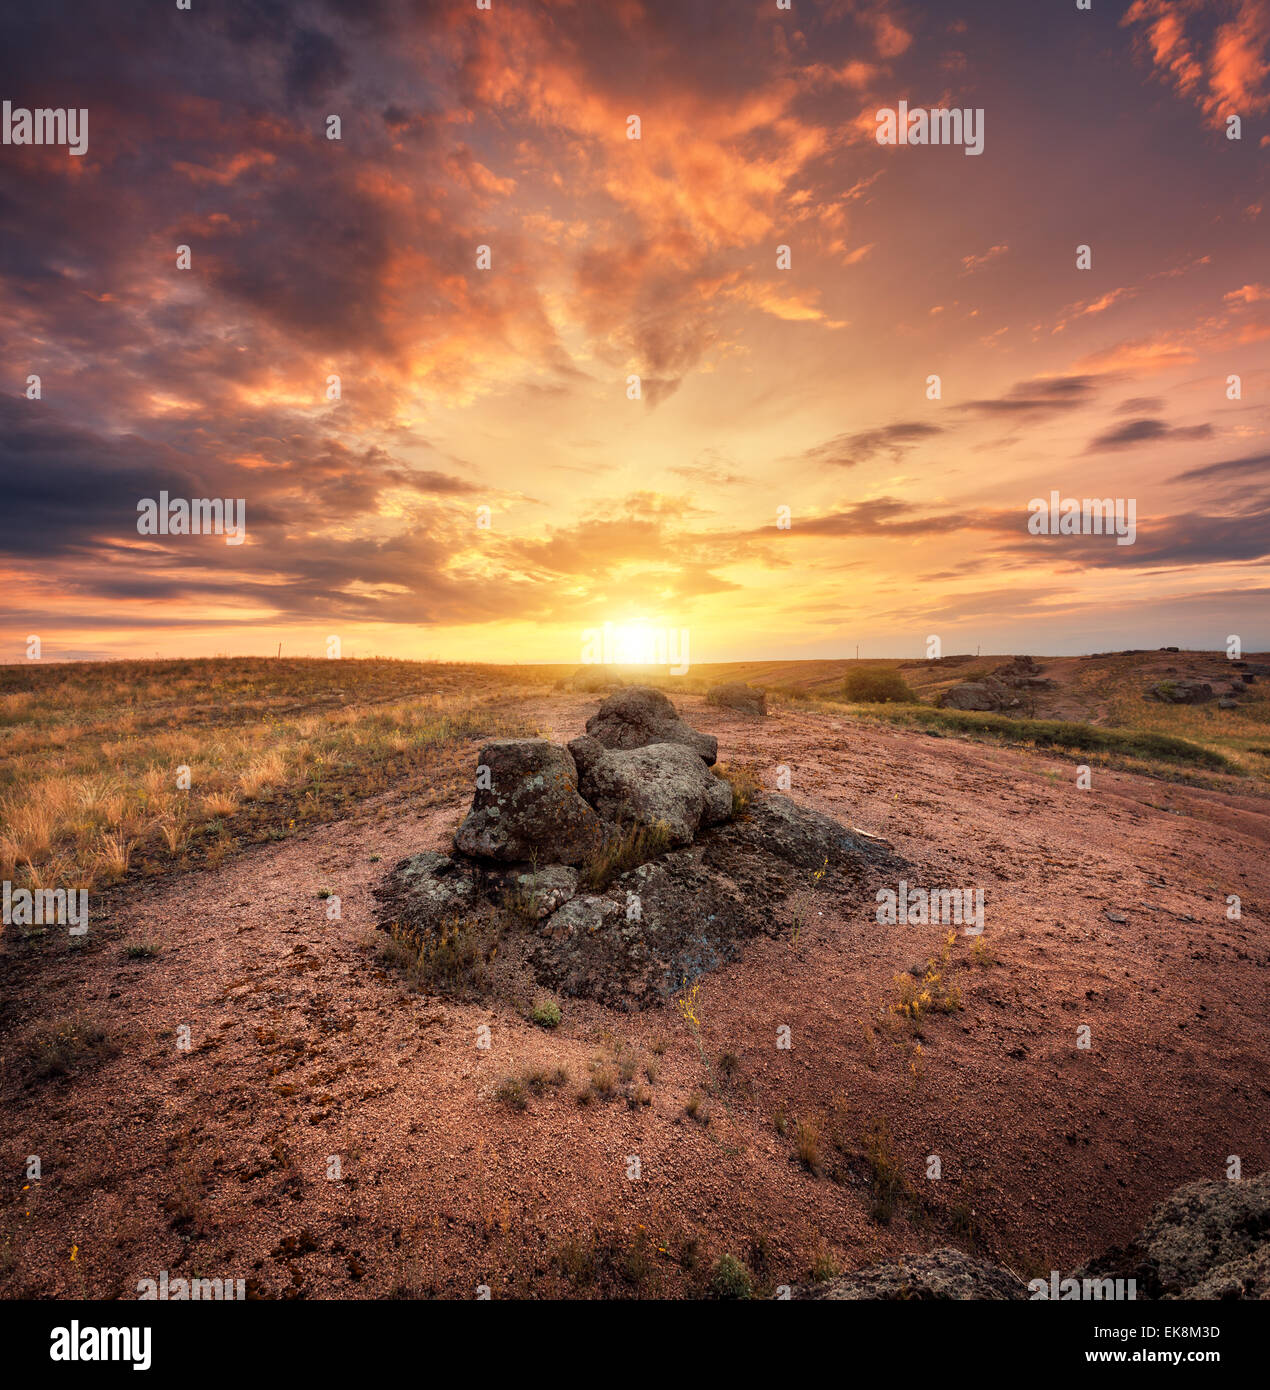 Bella estate tramonto con cielo rosso, arancio nuvole, rocce e erba gialla in Ucraina Foto Stock